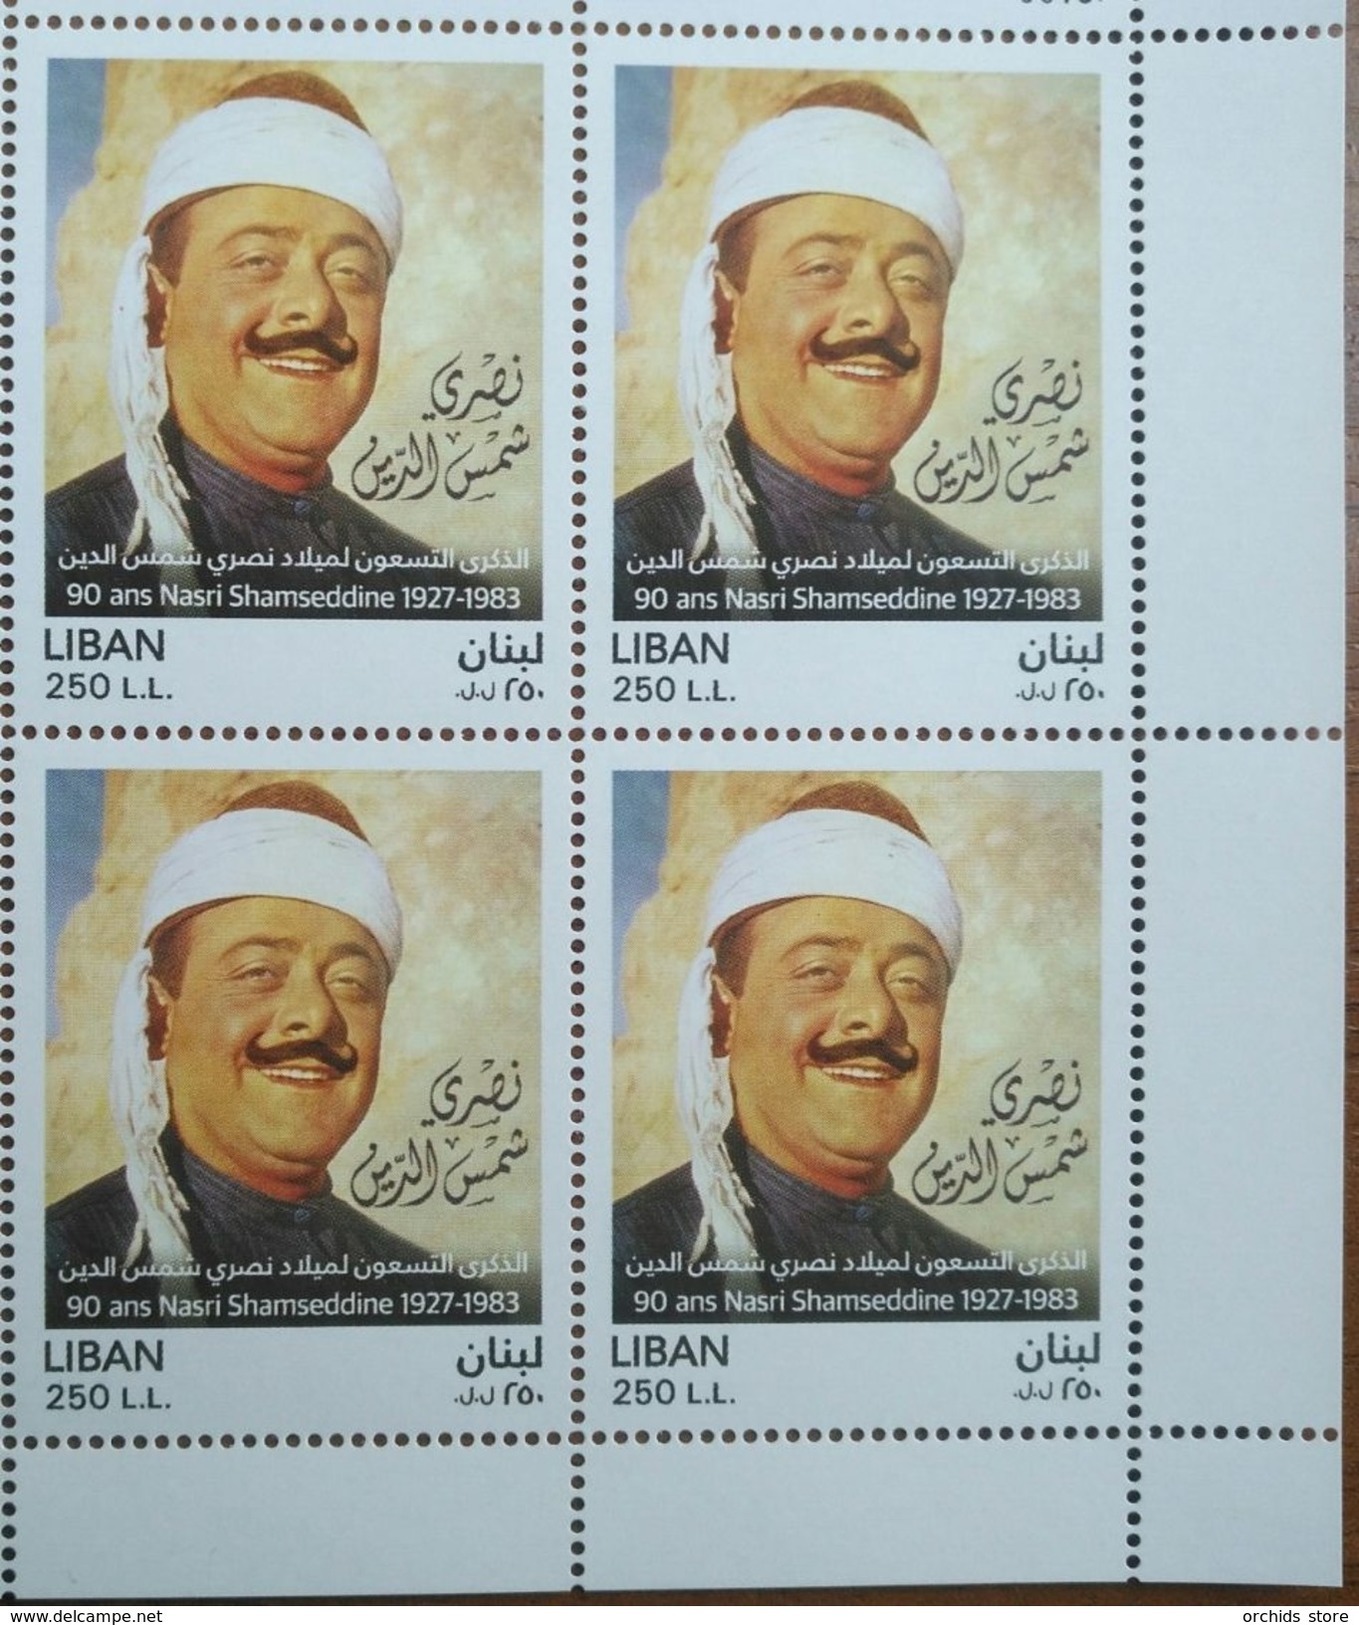 Lebanon NEW 2017 MNH Stamp, 90 Years Anniv Of Famous Comedian & Singer Nasri Shamseddine 1927-1983, Cnr Blk-4 - Lebanon